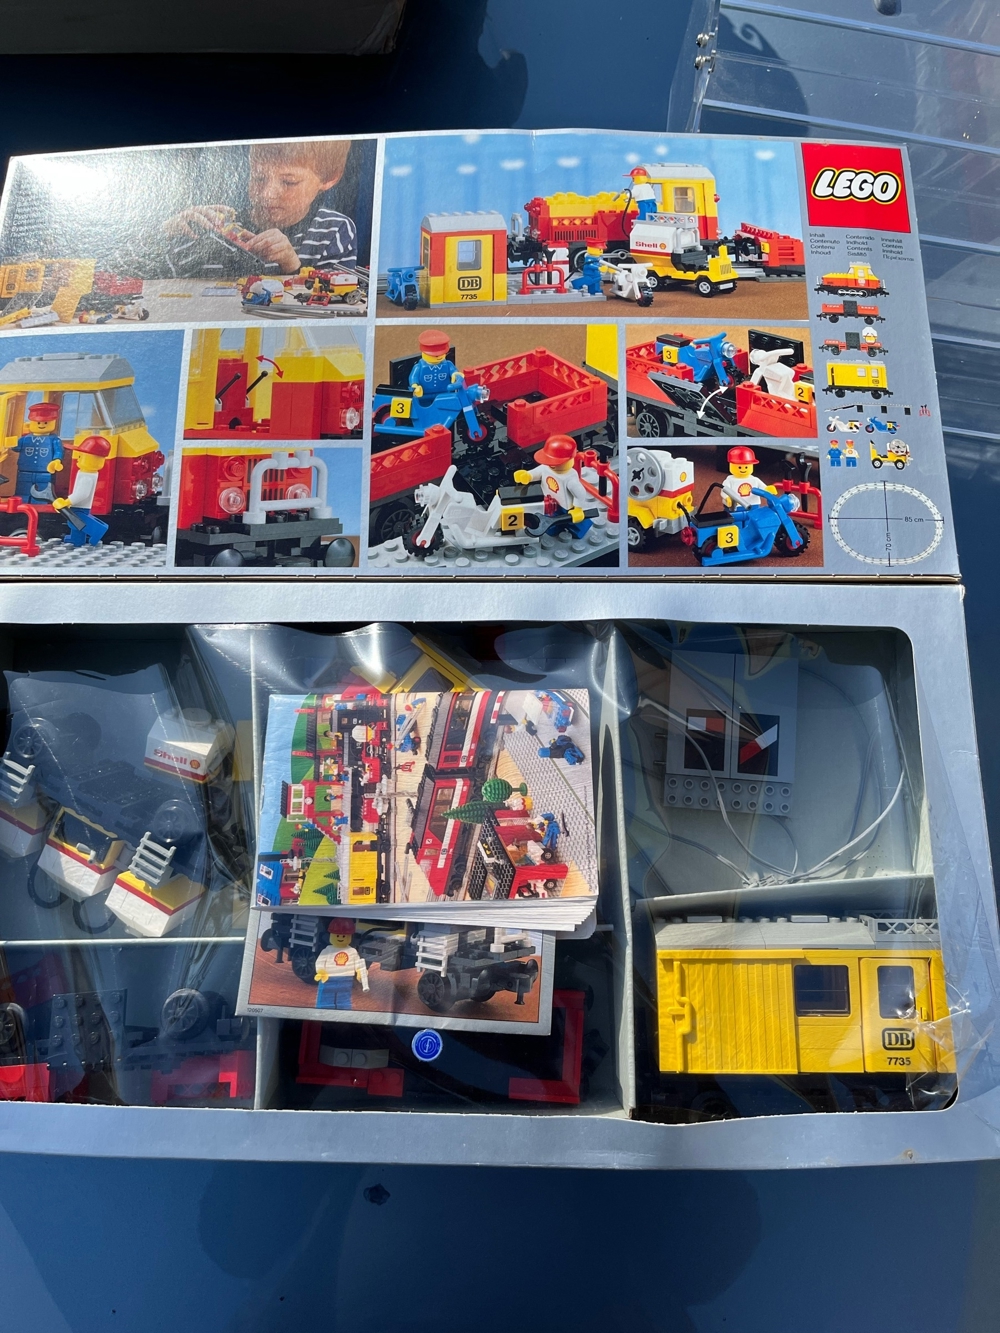 Lego Set 7735 